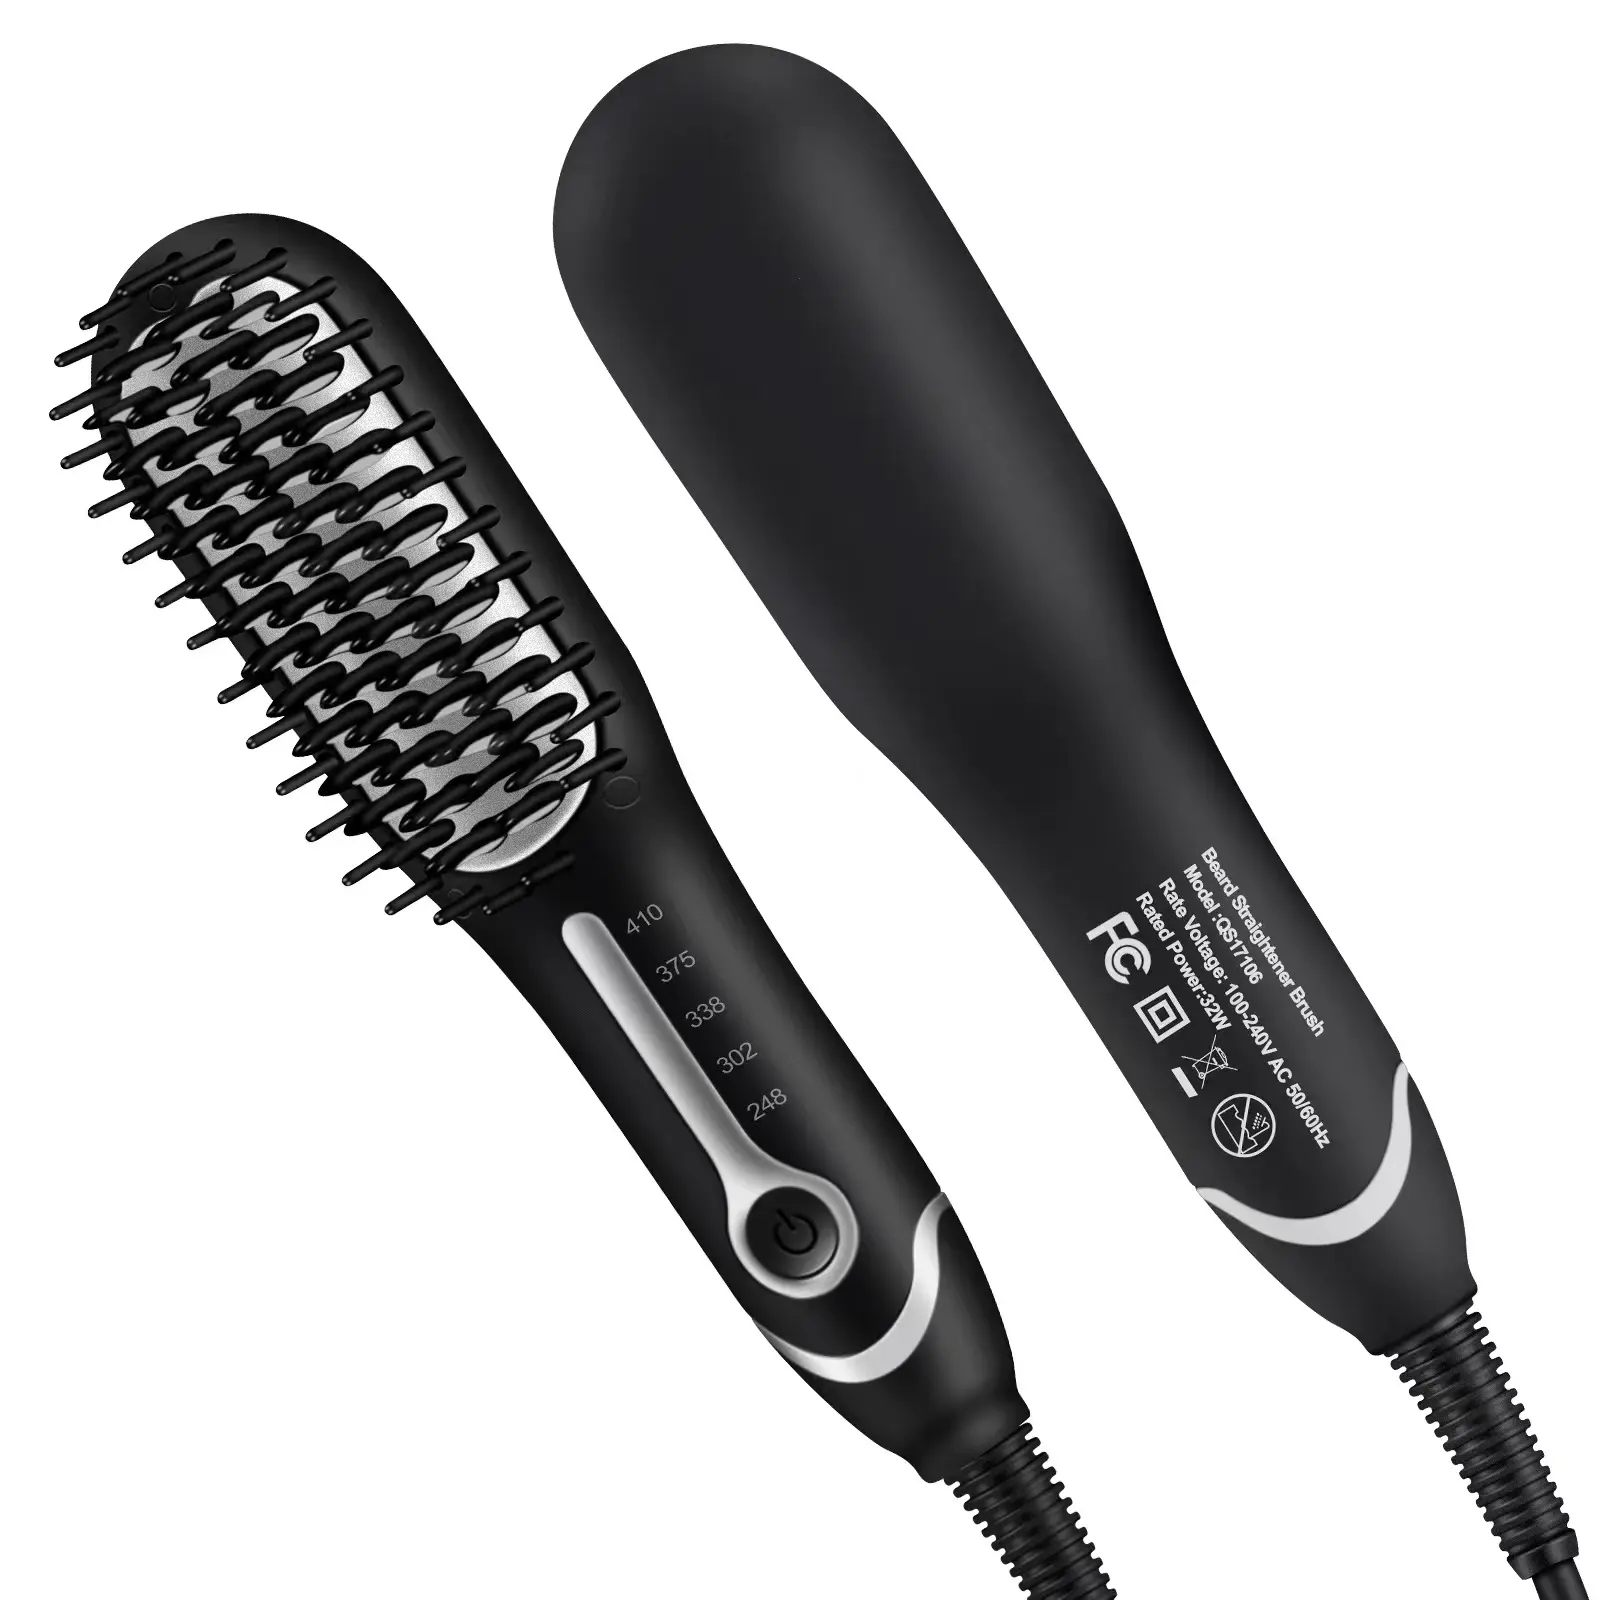 Taşınabilir mini saç demir hızlı saç düzleştirici fırça tarak toptan seramik elektrikli sıcak sakal düzleştirici fırça